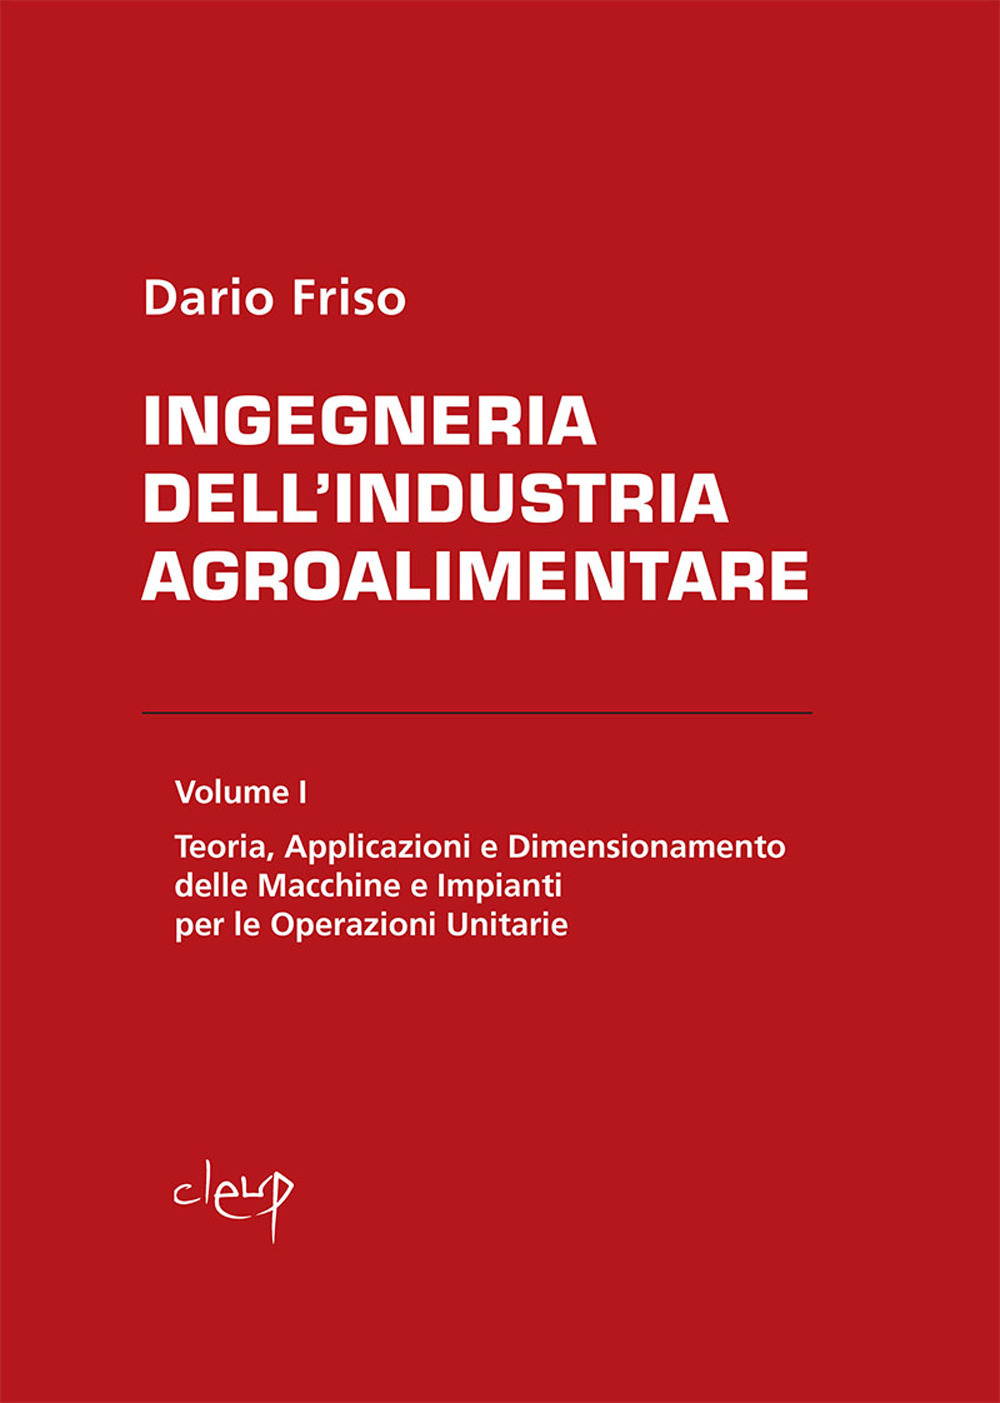 Image of Ingegneria dell'industria agroalimentare. Vol. 1: Teoria, applicazioni e dimensionamento delle macchine e impianti per le operazioni unitarie.